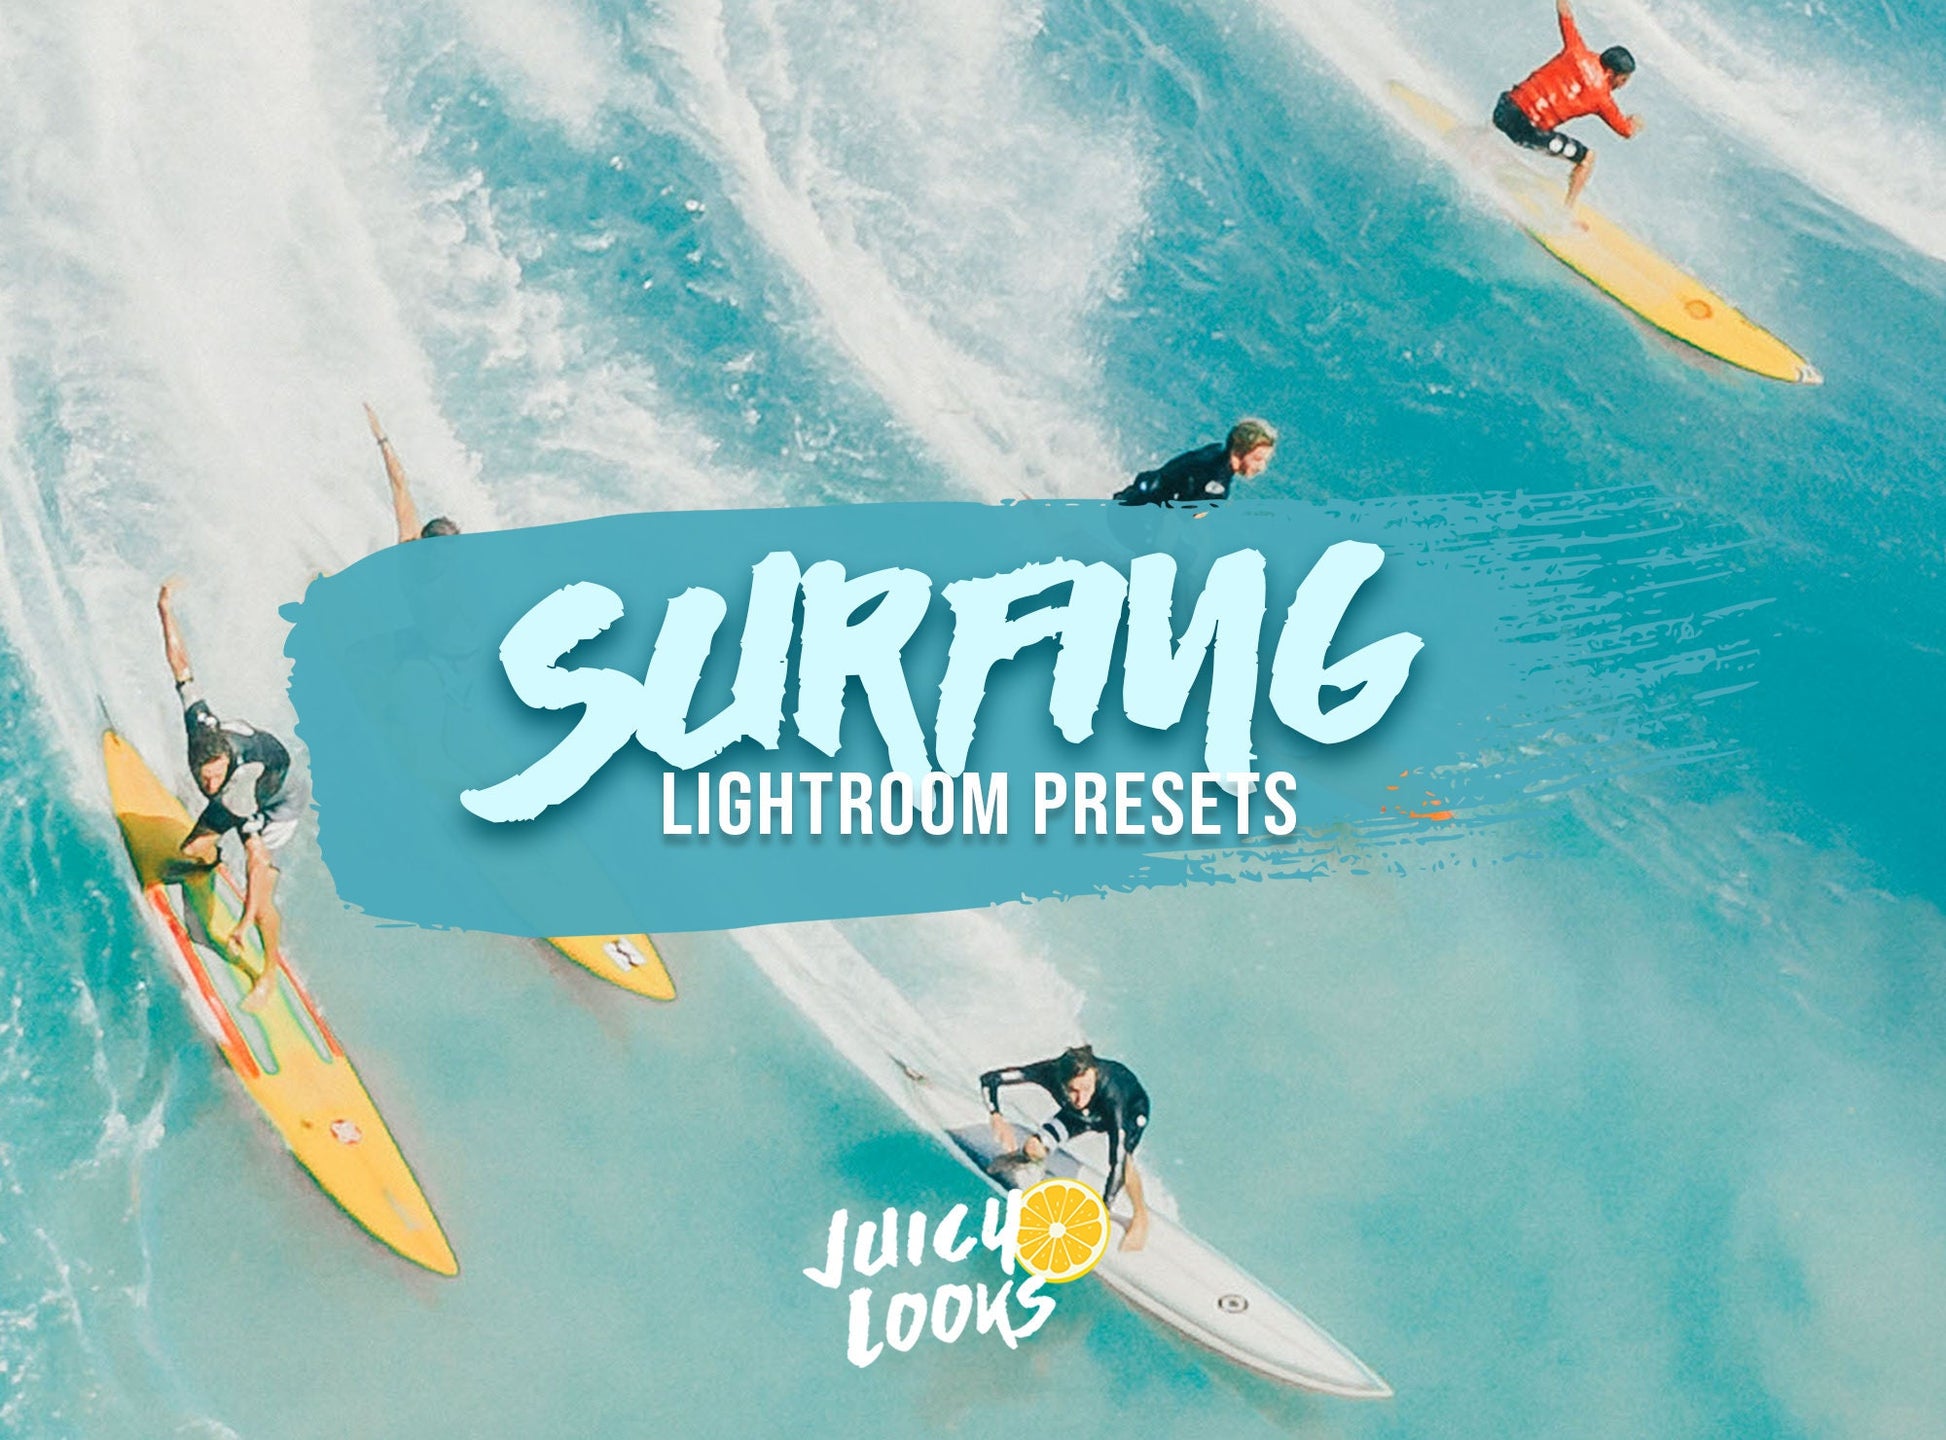 Surfing Lightroom Presets for Mobile & Desktop - Juicy Looks Presets